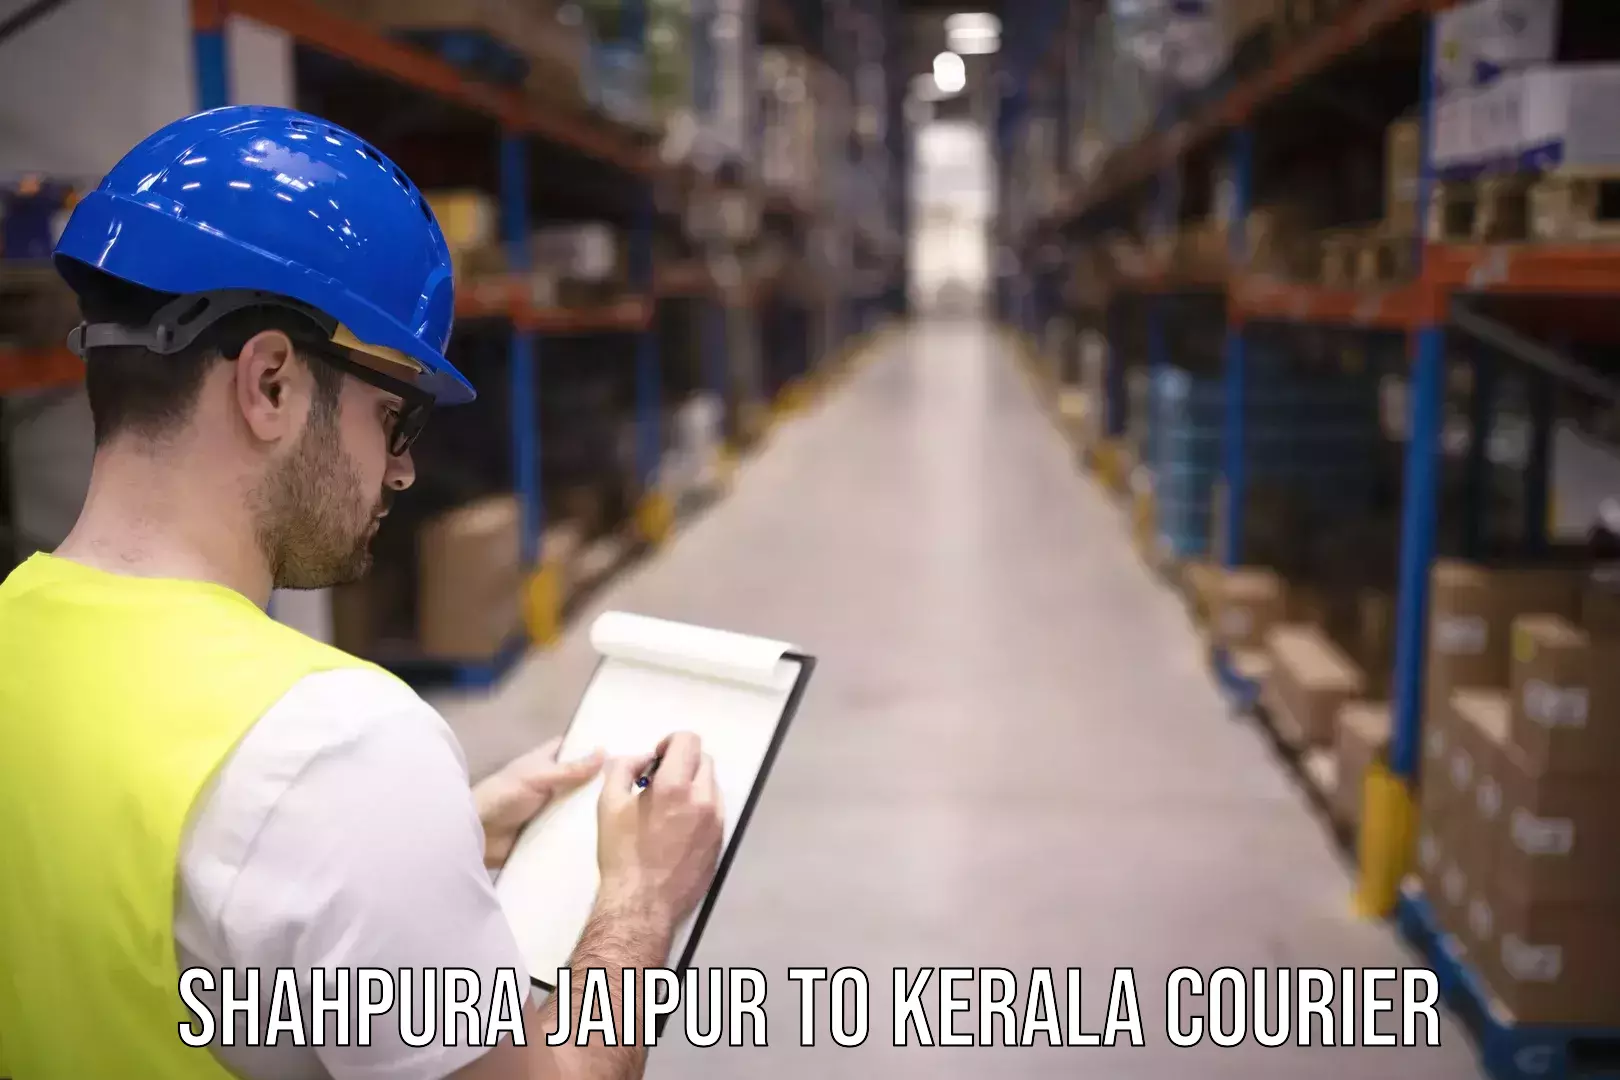 Efficient parcel service Shahpura Jaipur to Kerala